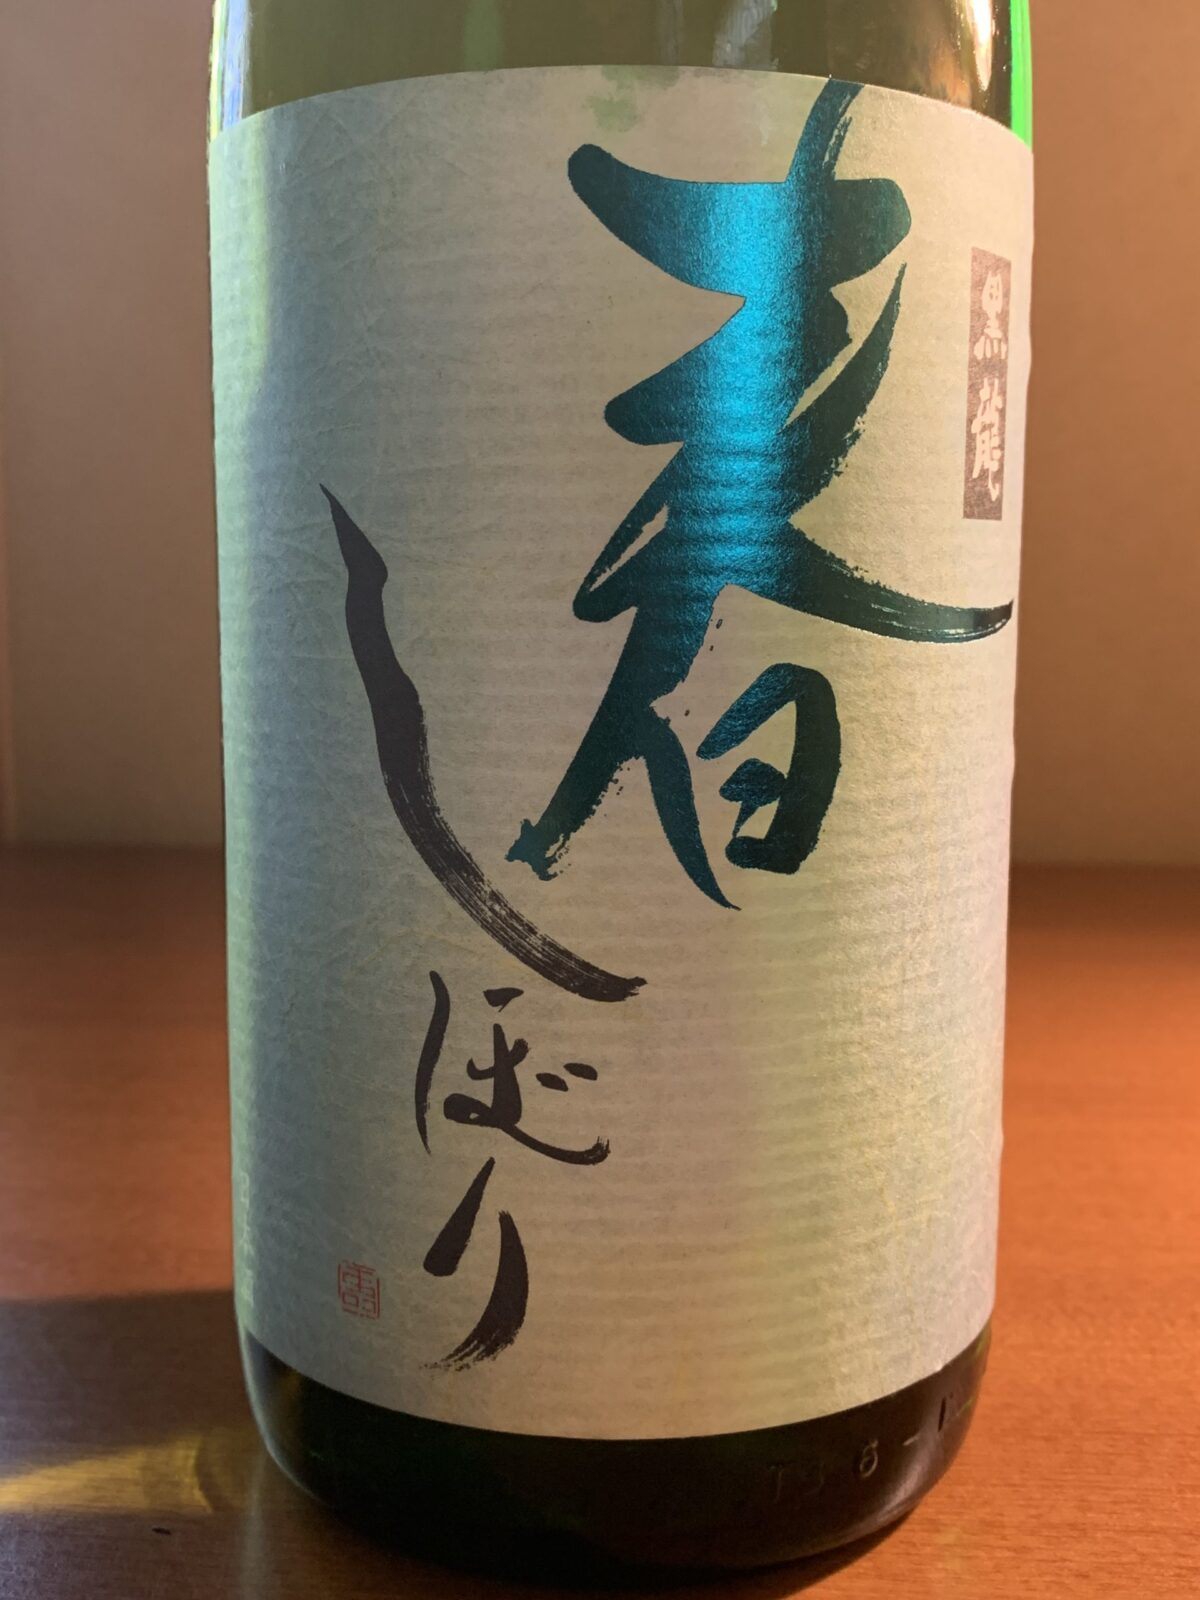 福井の日本酒『黒龍春しぼり吟醸』は品のいいキリッとした綺麗な酒